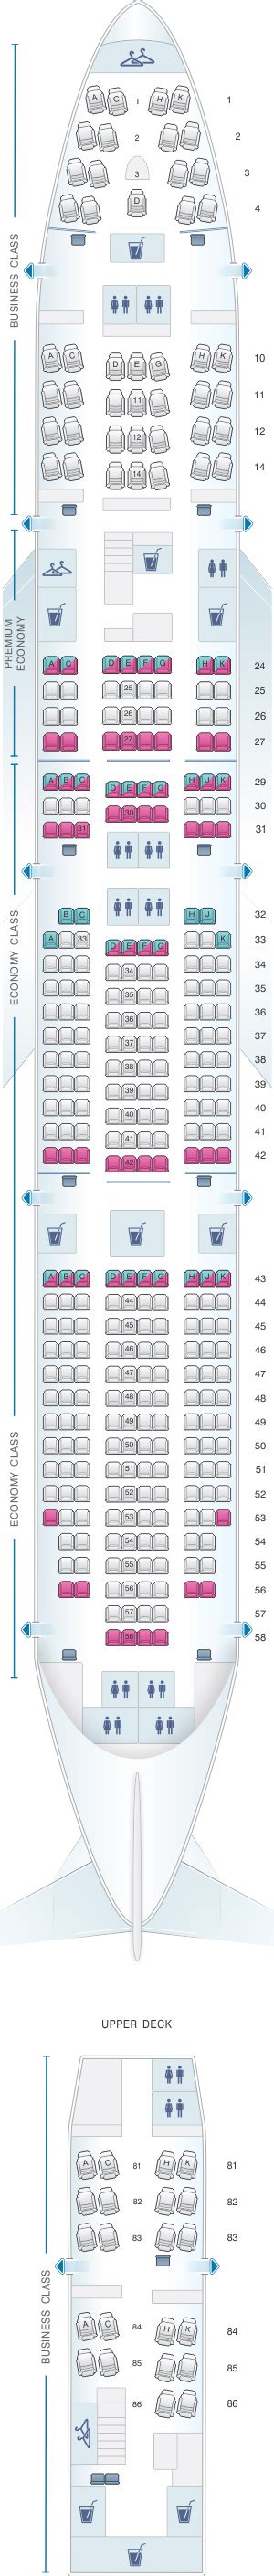 Lufthansa 747 Business Class Seat Map